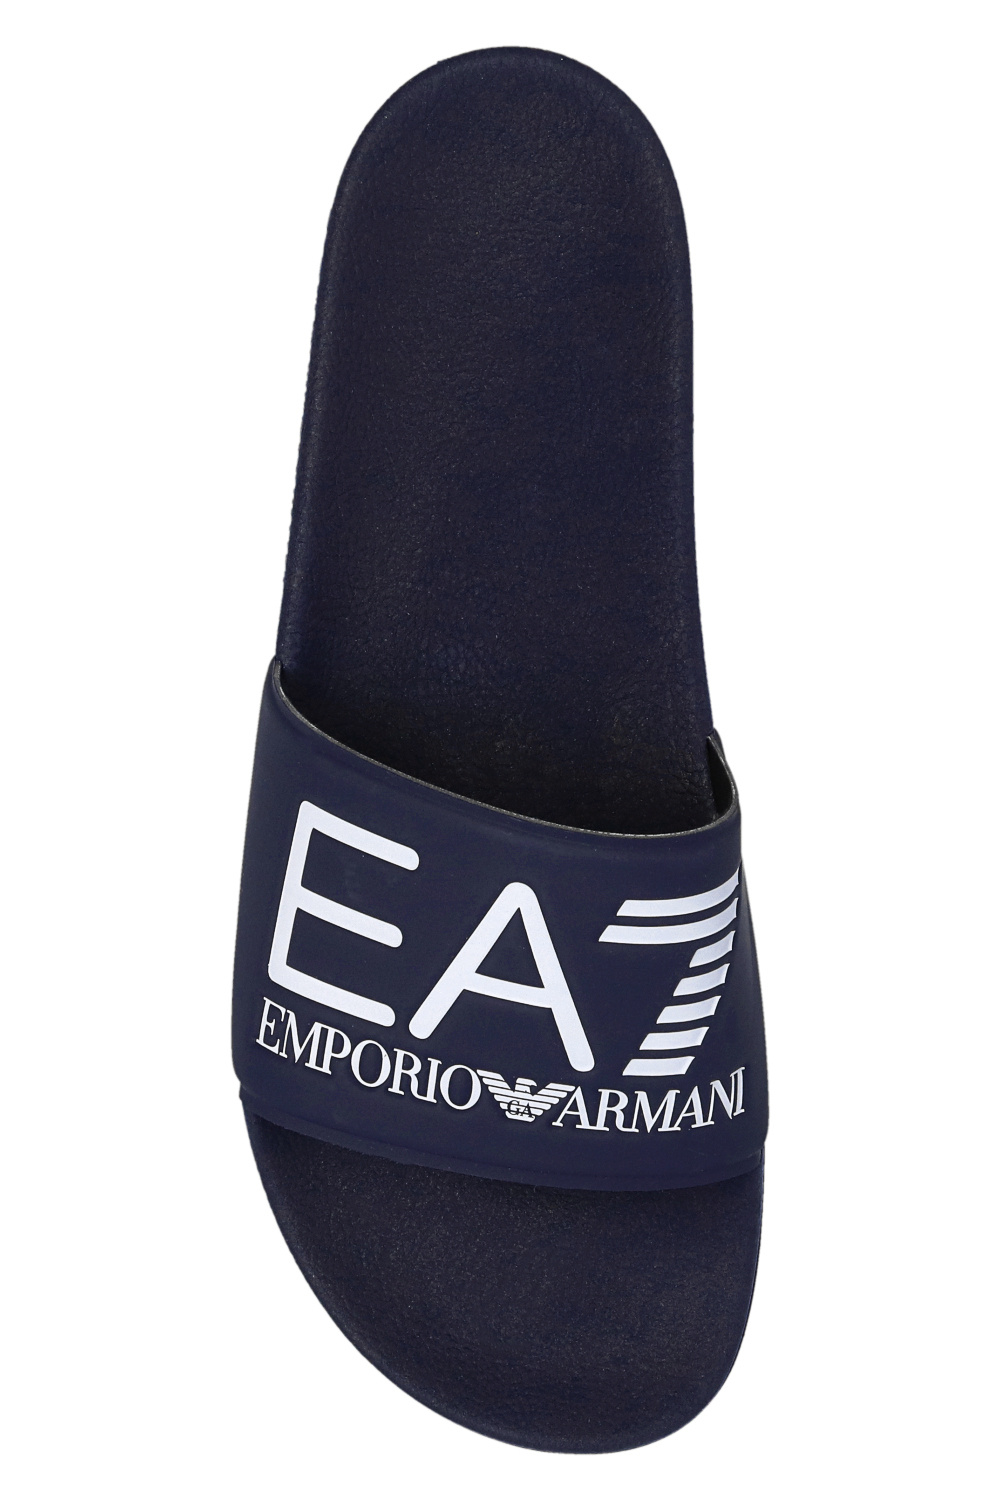 print shirt | Giorgio Armani notched-collar double-breasted blazer Blau |  IetpShops - EA7 Emporio Armani Emporio Armani zigzag - Men\'s Shoes